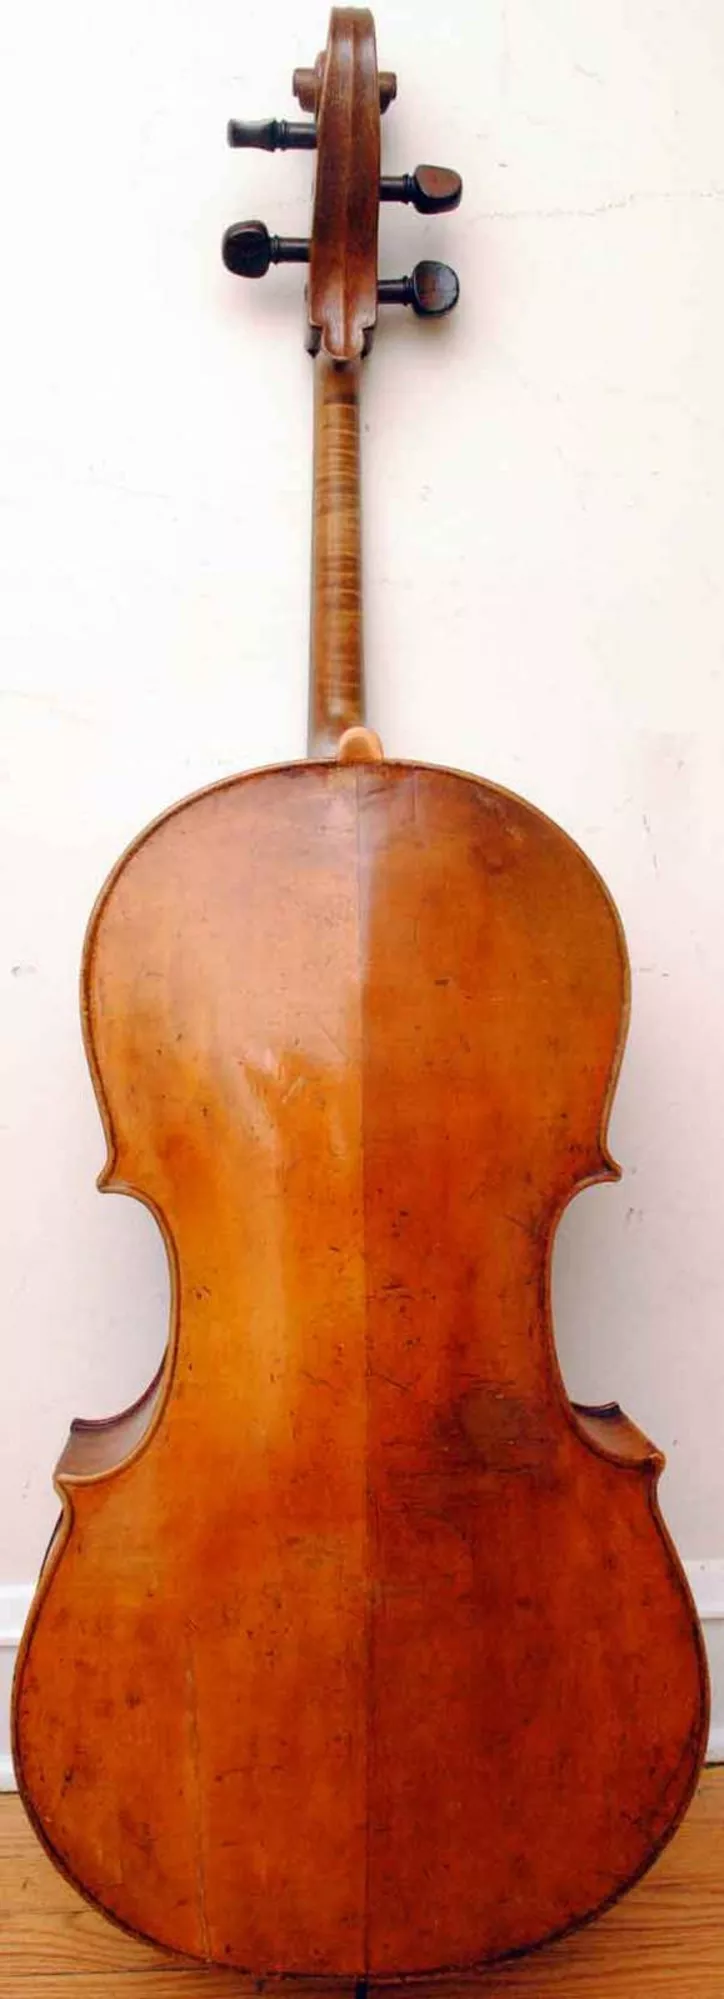 Продам итальянскую виолончель 18го века.  2